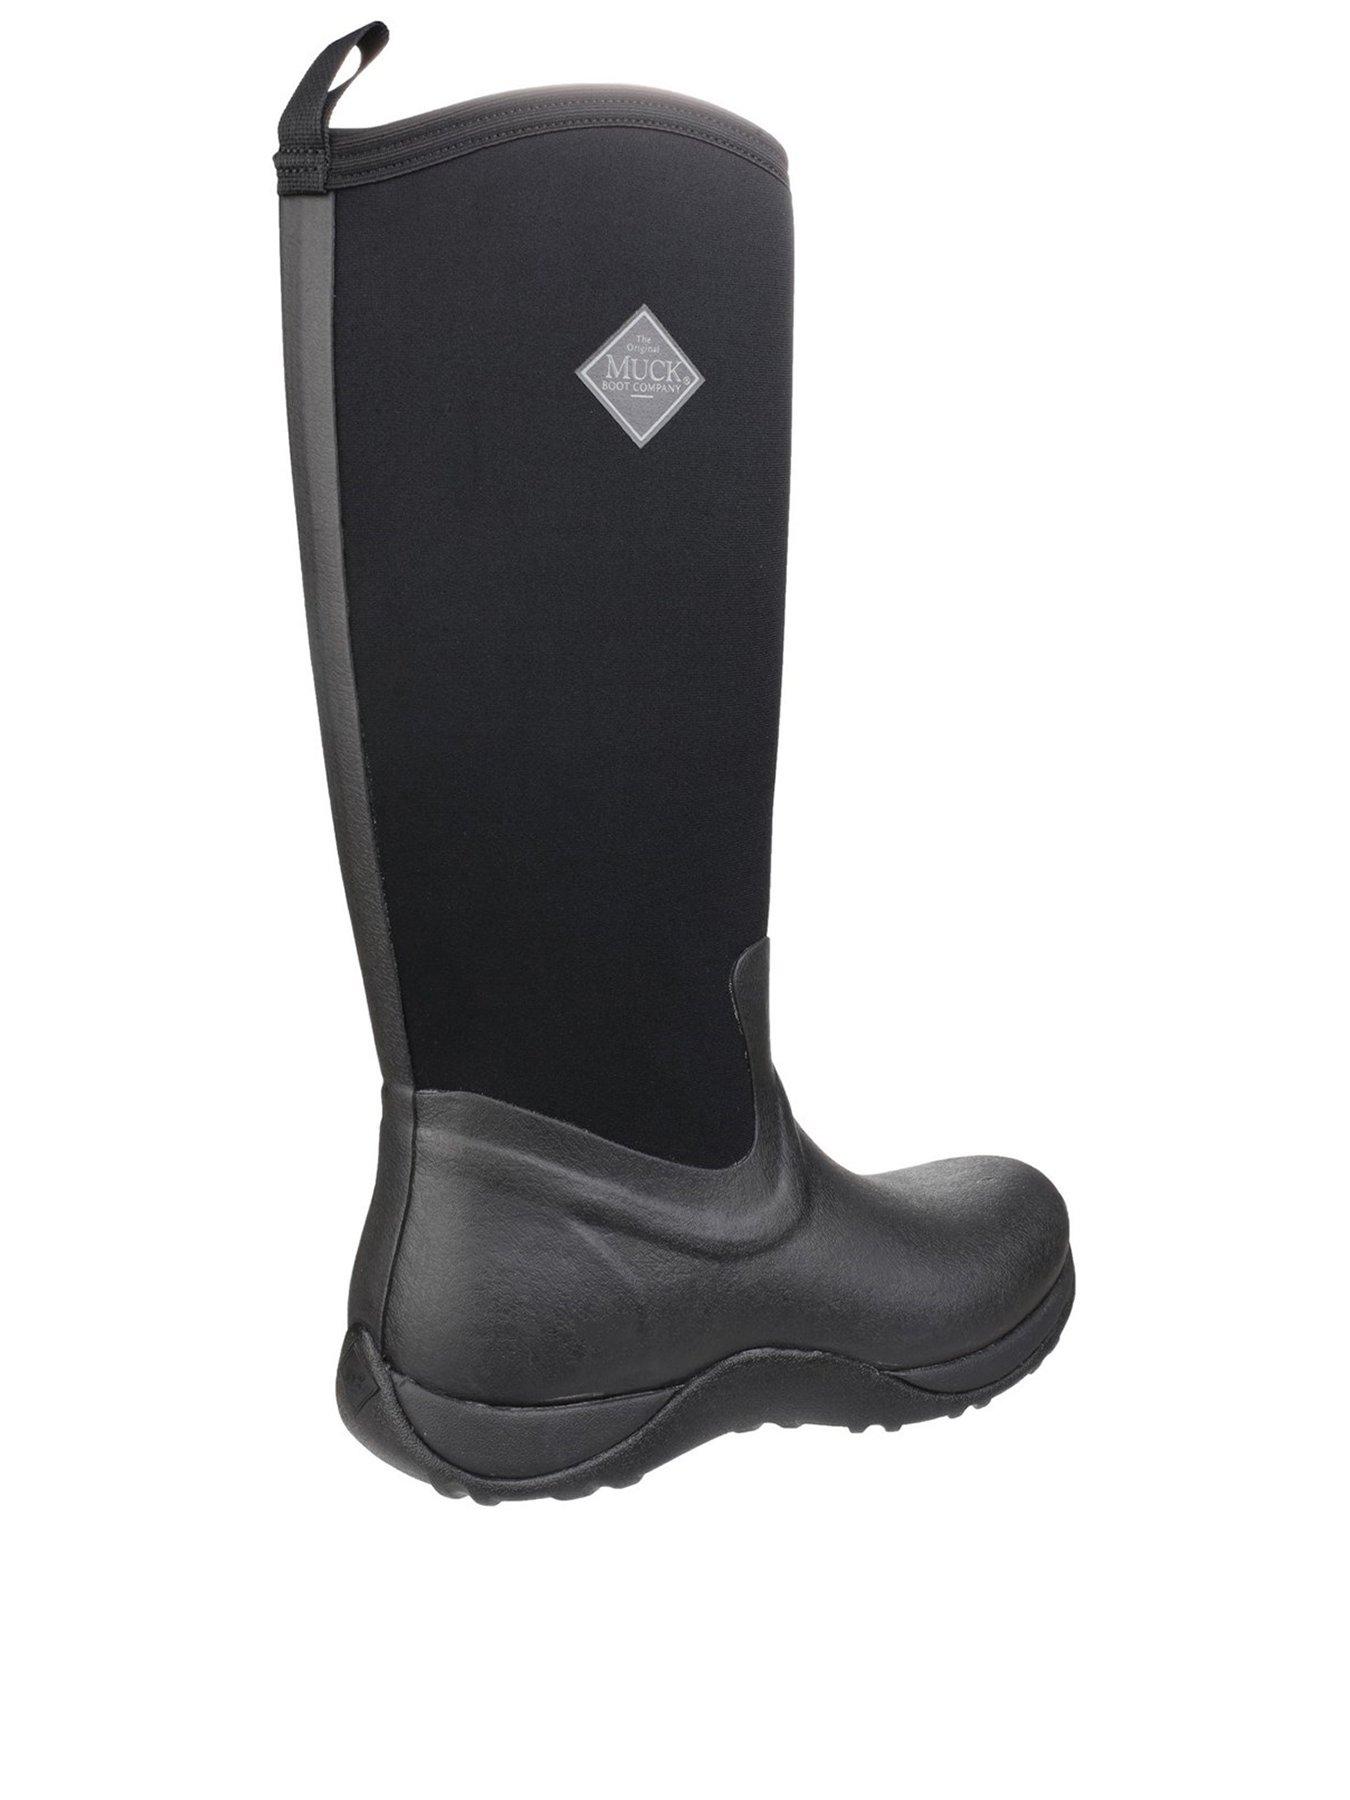 Muck Boots ARCTIC ADVENTURE Ladies Waterproof Winter Wellington Boots Black/Tan